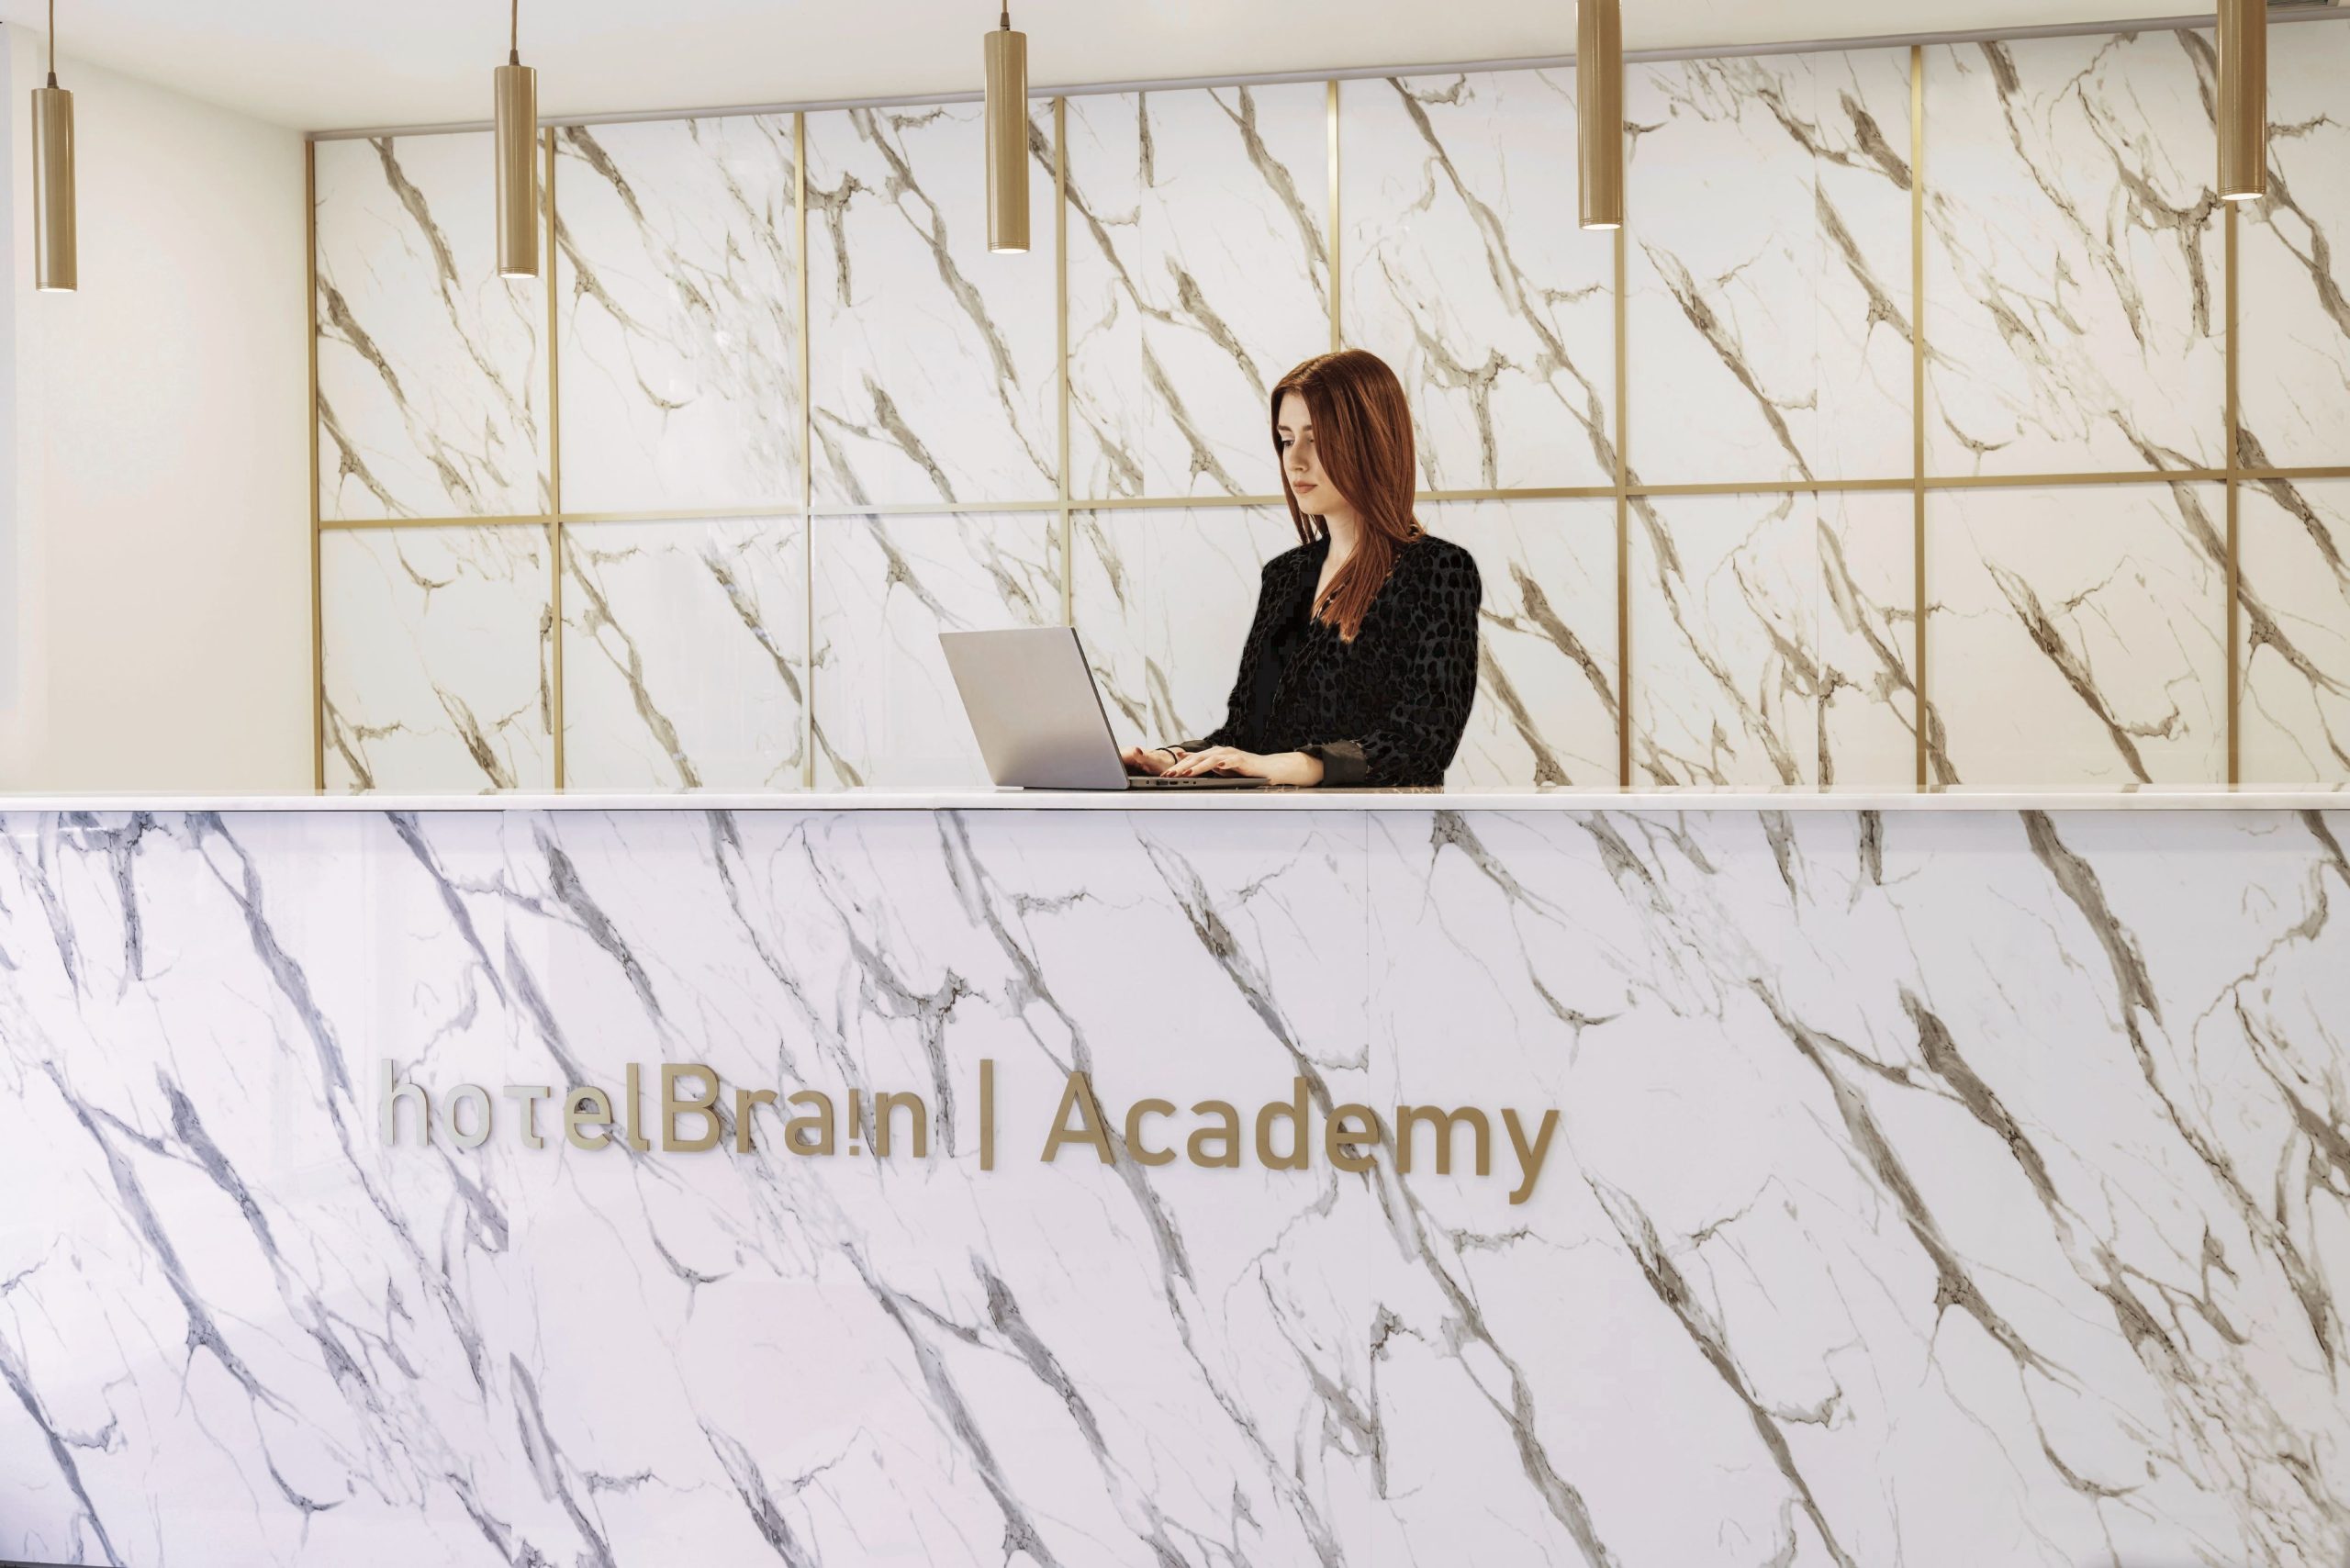 HotelBrain Academy: Ξεκίνησαν οι εγγραφές για τα εκπαιδευτικά τουριστικά προγράμματα του ξενοδοχειακού Ομίλου HotelBrain